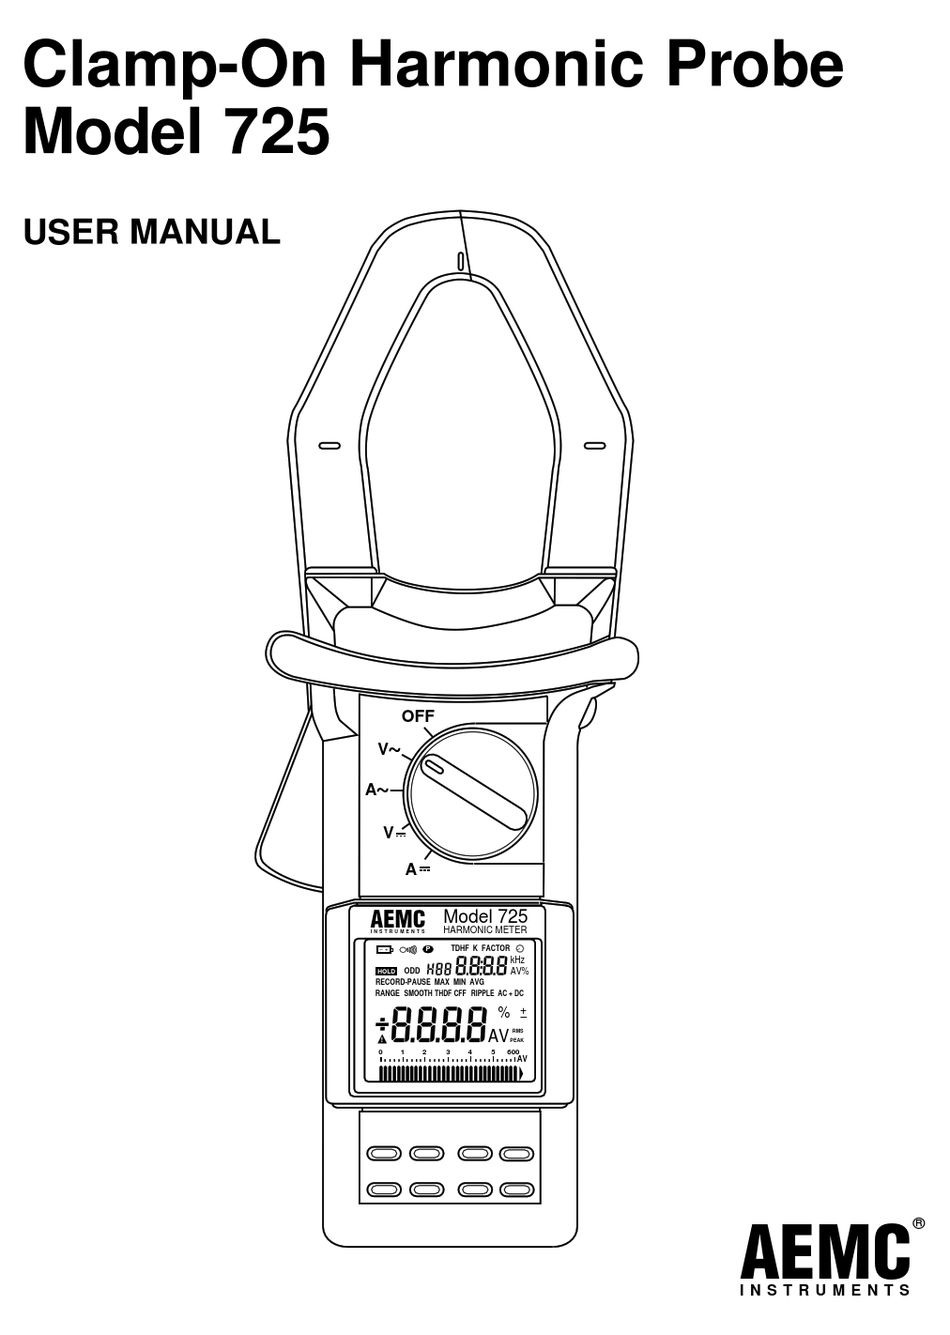 AEMC 725 USER MANUAL Pdf Download ManualsLib